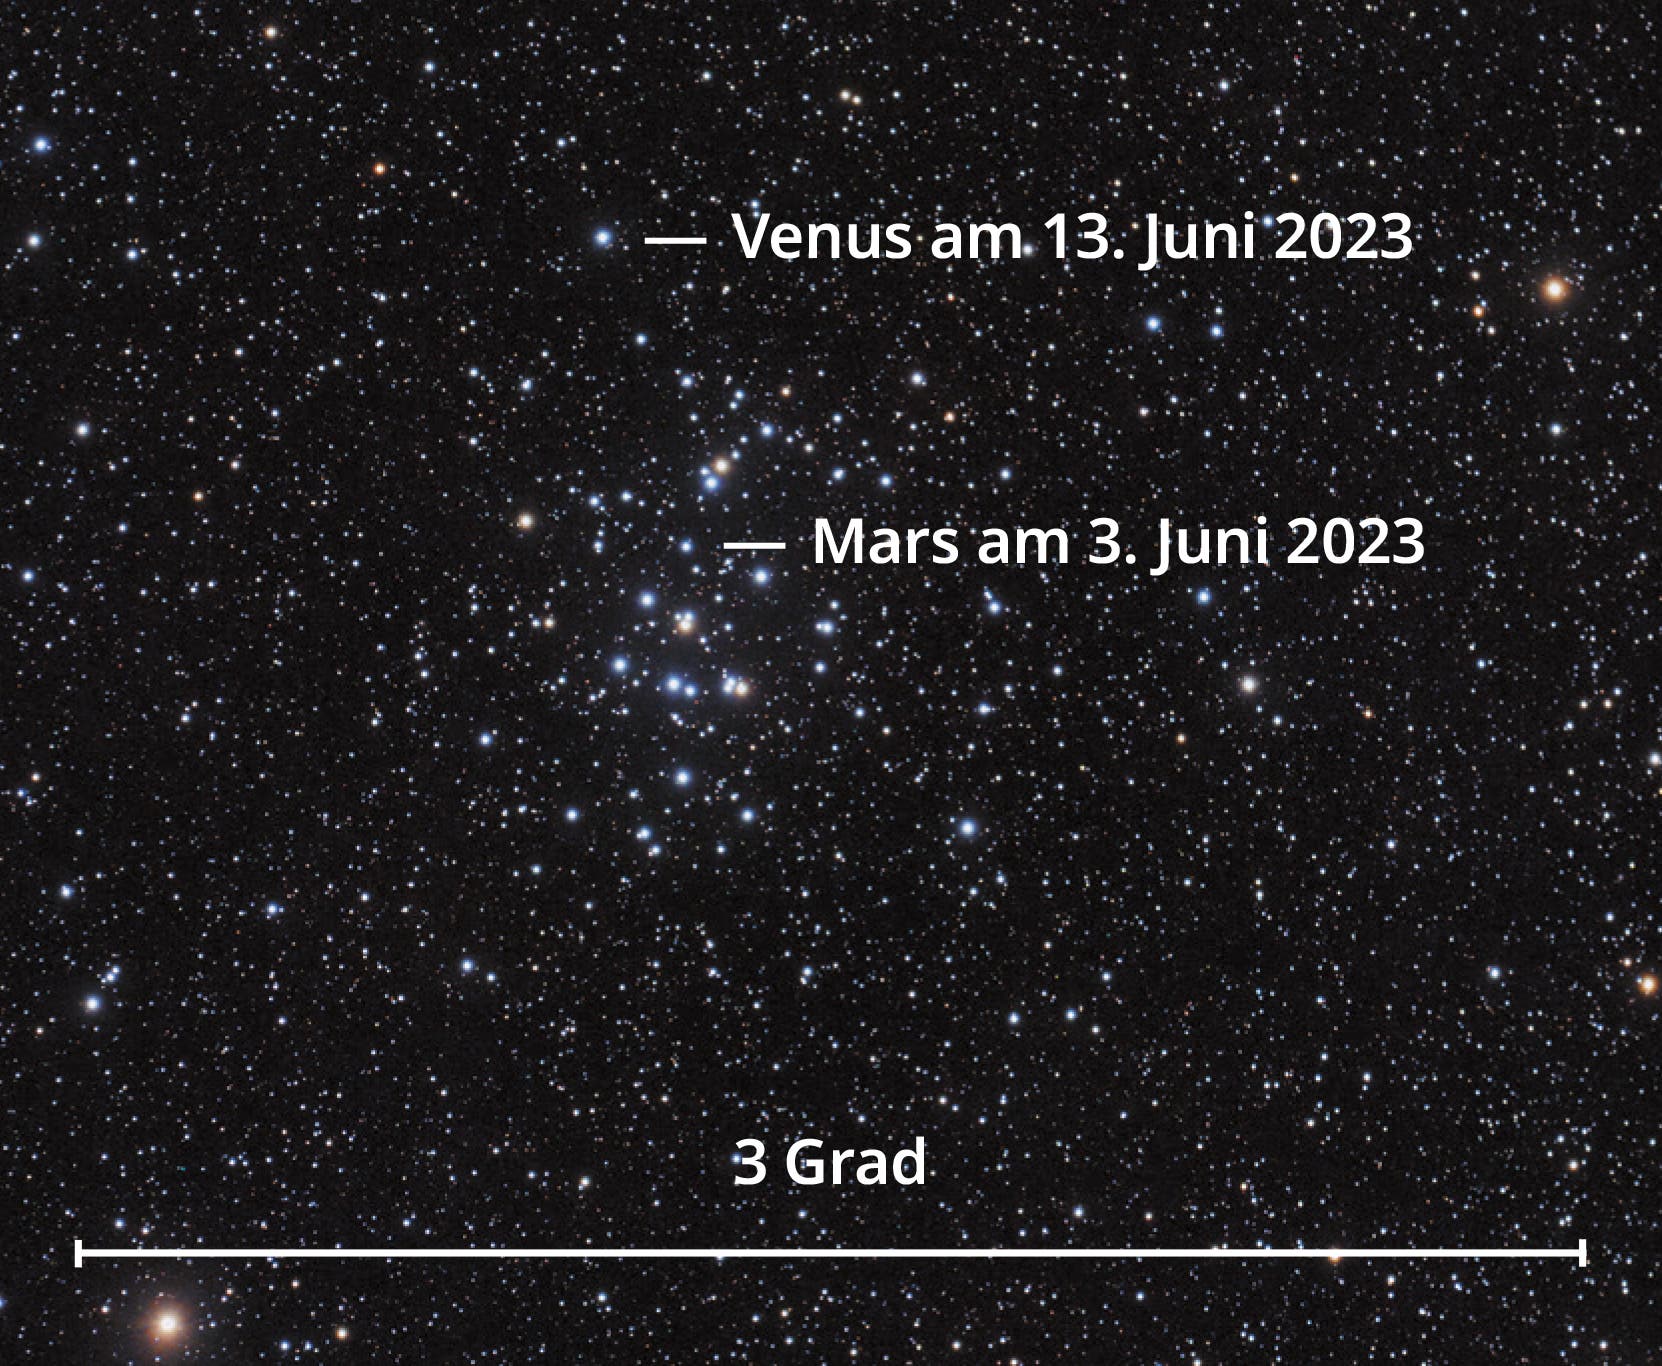 Der offene Sternhaufen Messier 44 wird im Juni von den Planten Mars und Venus besucht.